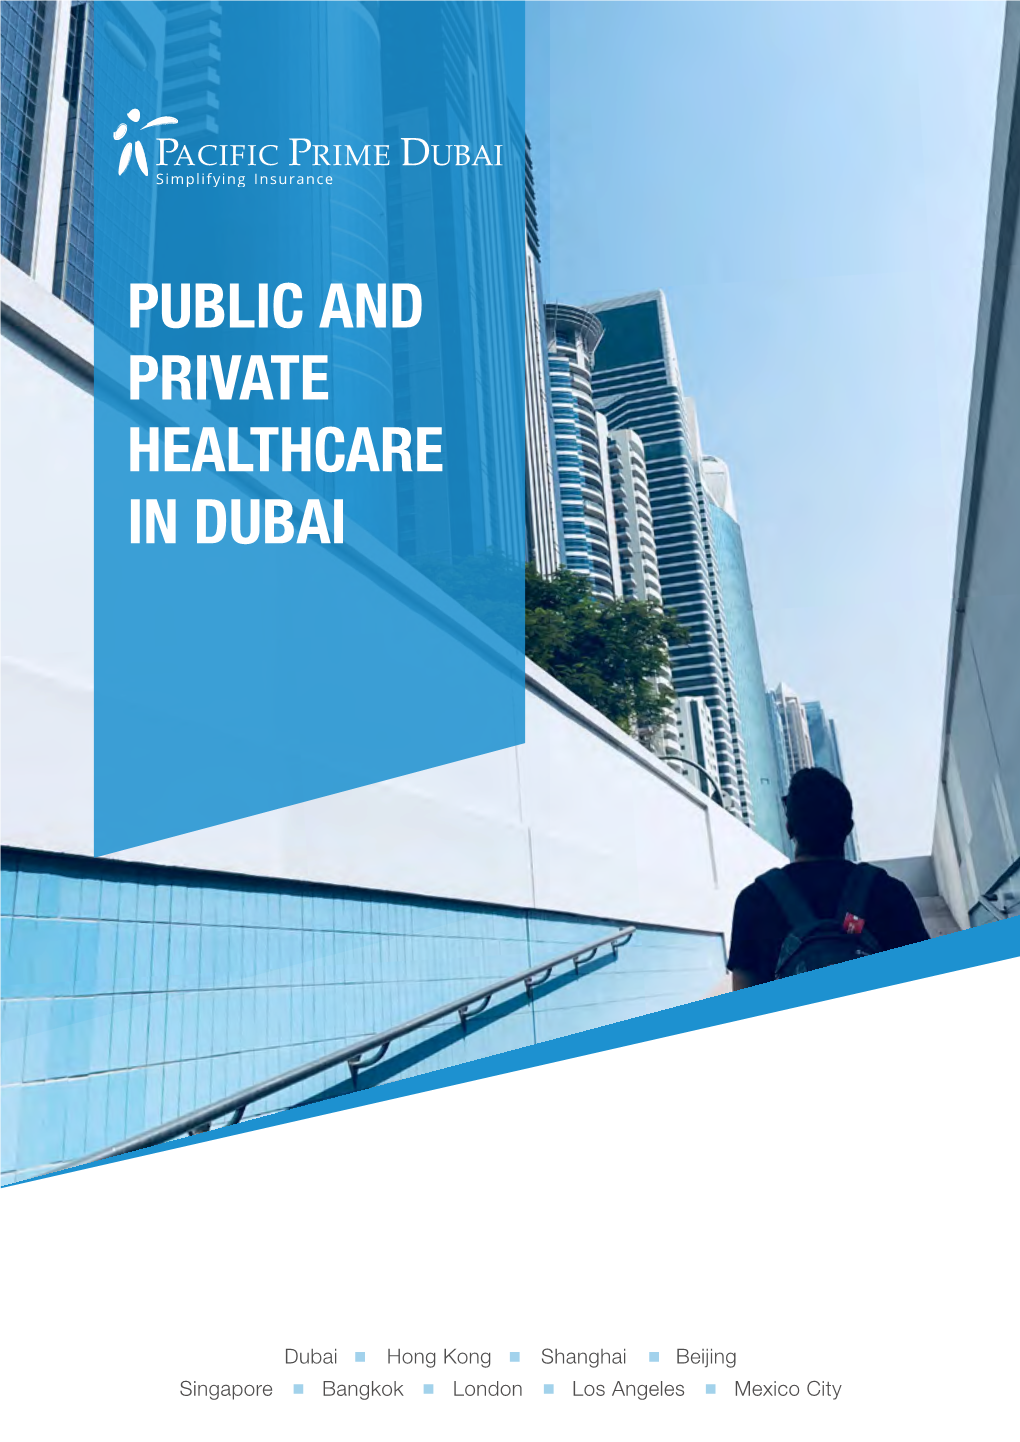 Public and Private Healthcare in Dubai